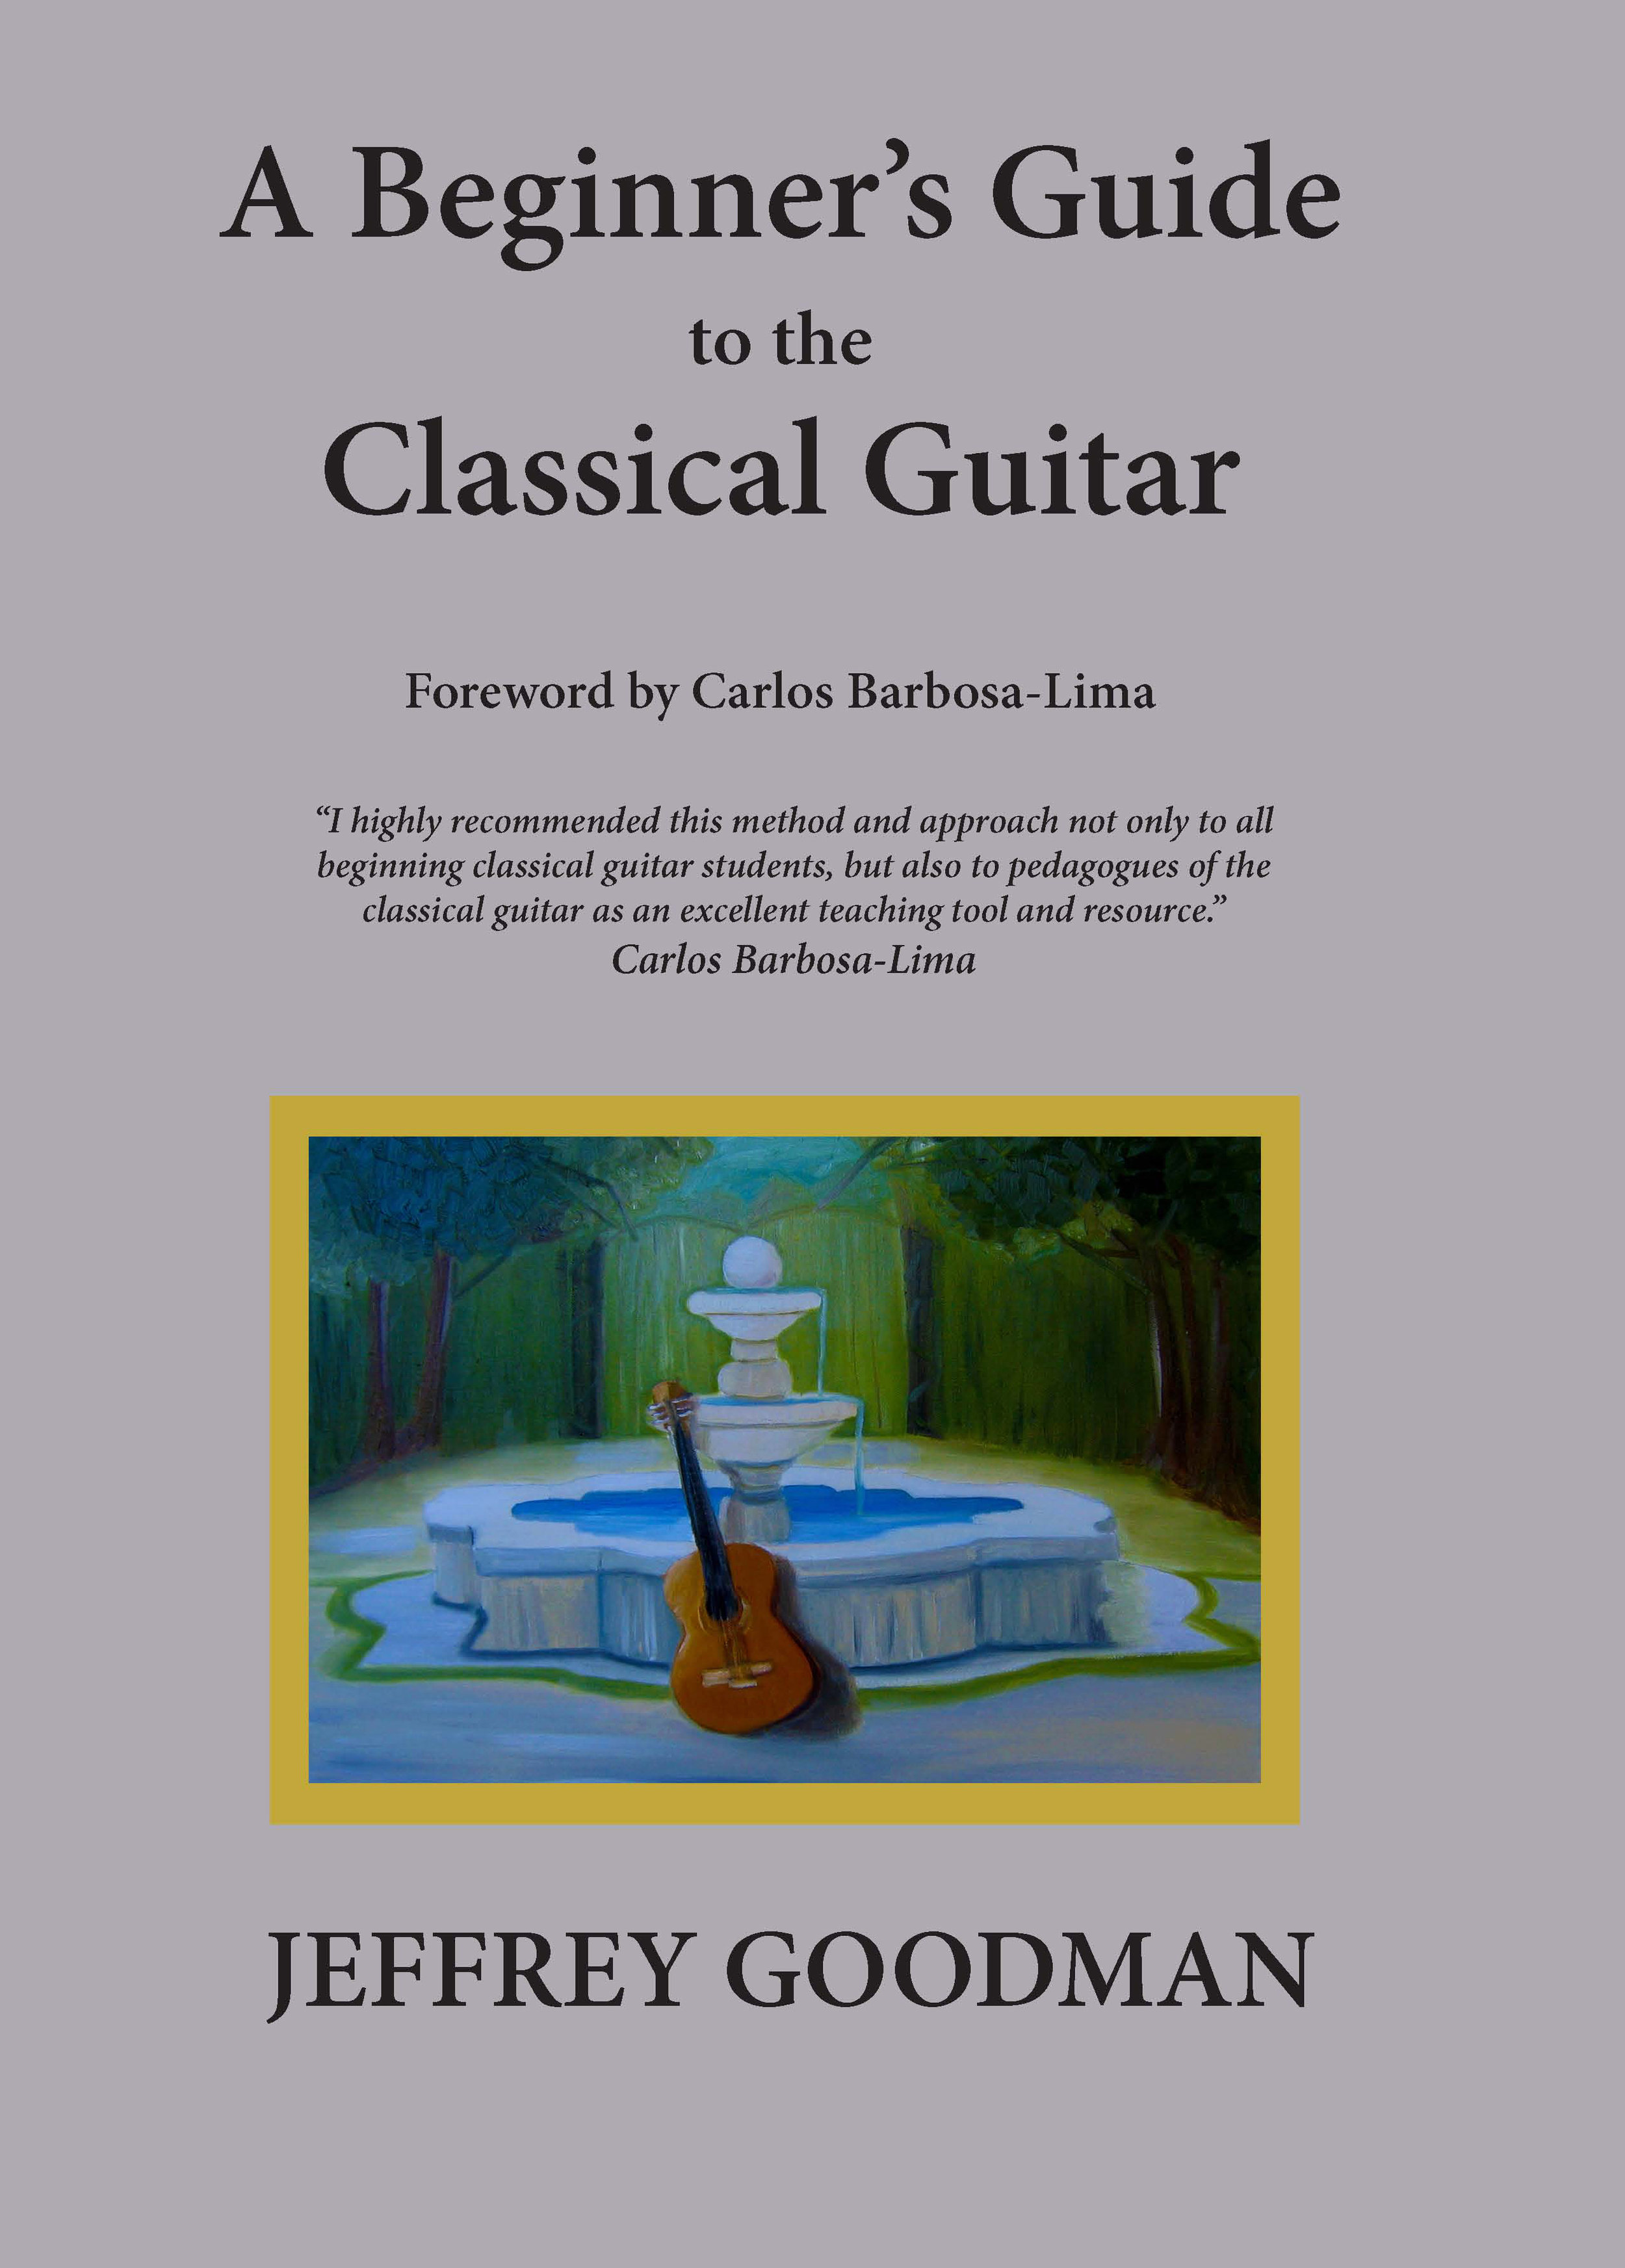 Guitar book cover 10-20-17 Carlos 2.jpg